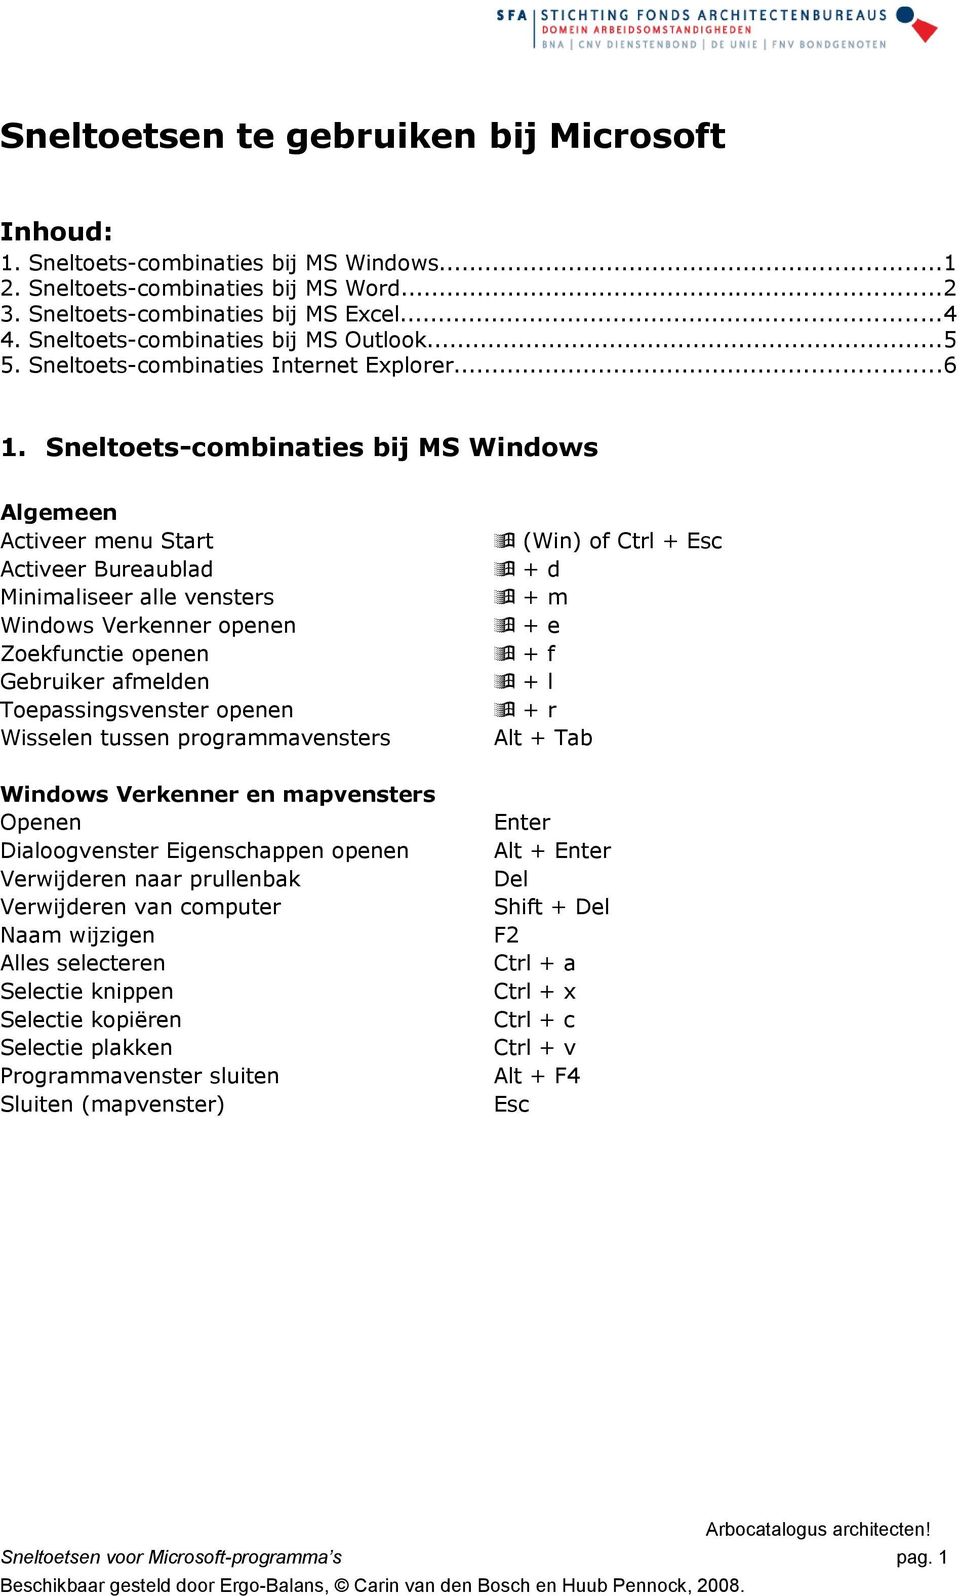 Sneltoets-combinaties bij MS Windows Activeer menu Start Activeer Bureaublad Minimaliseer alle vensters Windows Verkenner openen Zoekfunctie openen Gebruiker afmelden Toepassingsvenster openen